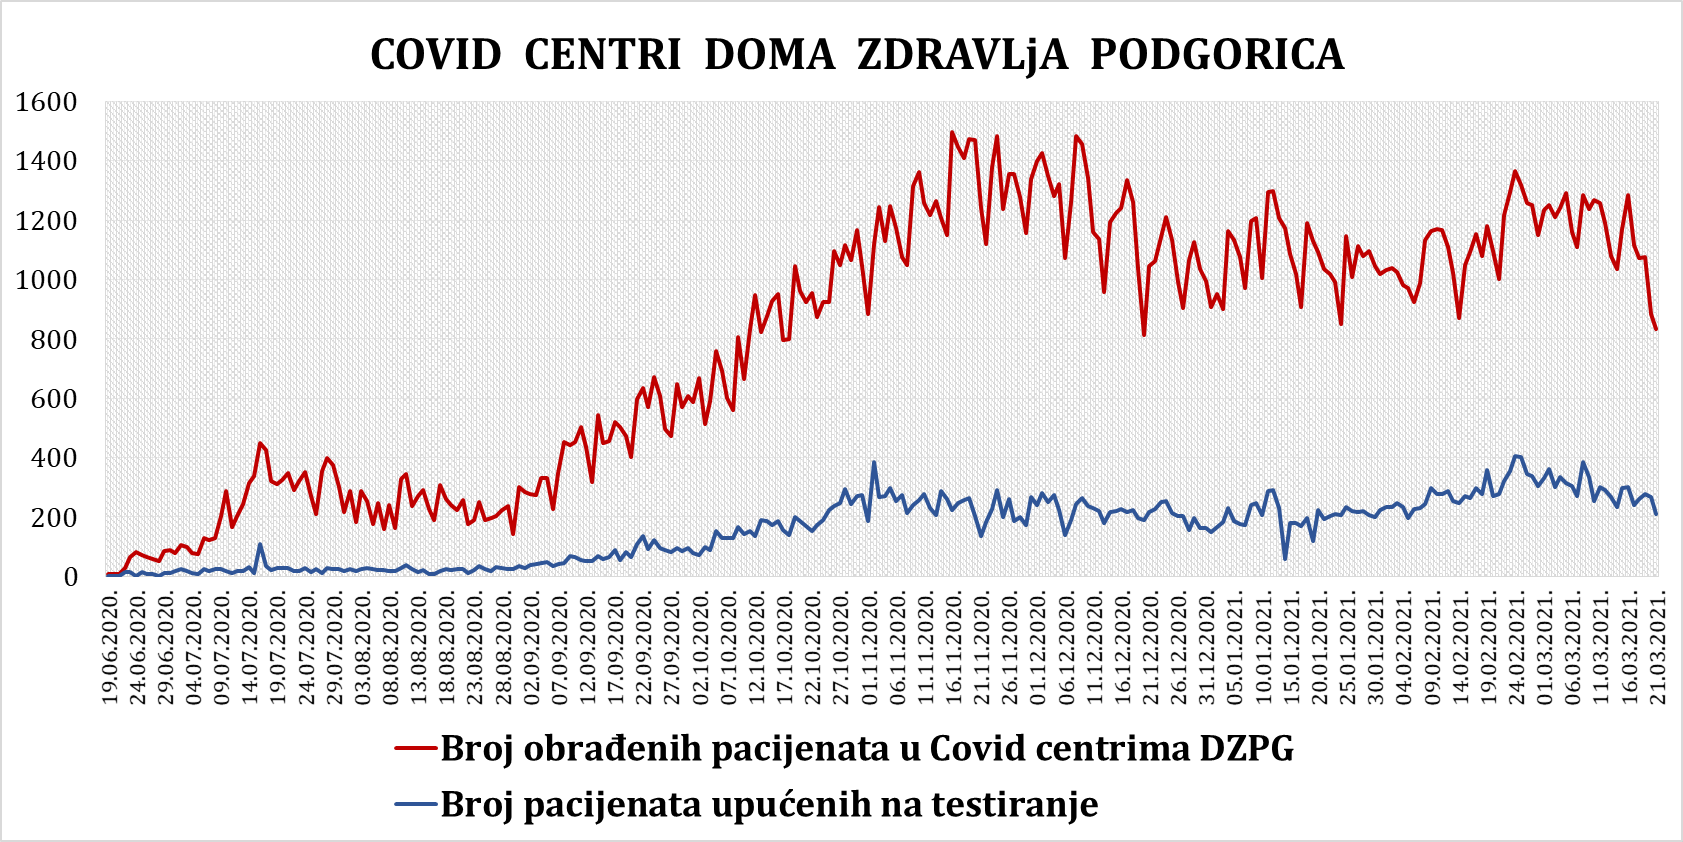 IZVJEŠTAJ IZ COVID CENTARA DOMA ZDRAVLJA PODGORICA 21.03.2021.